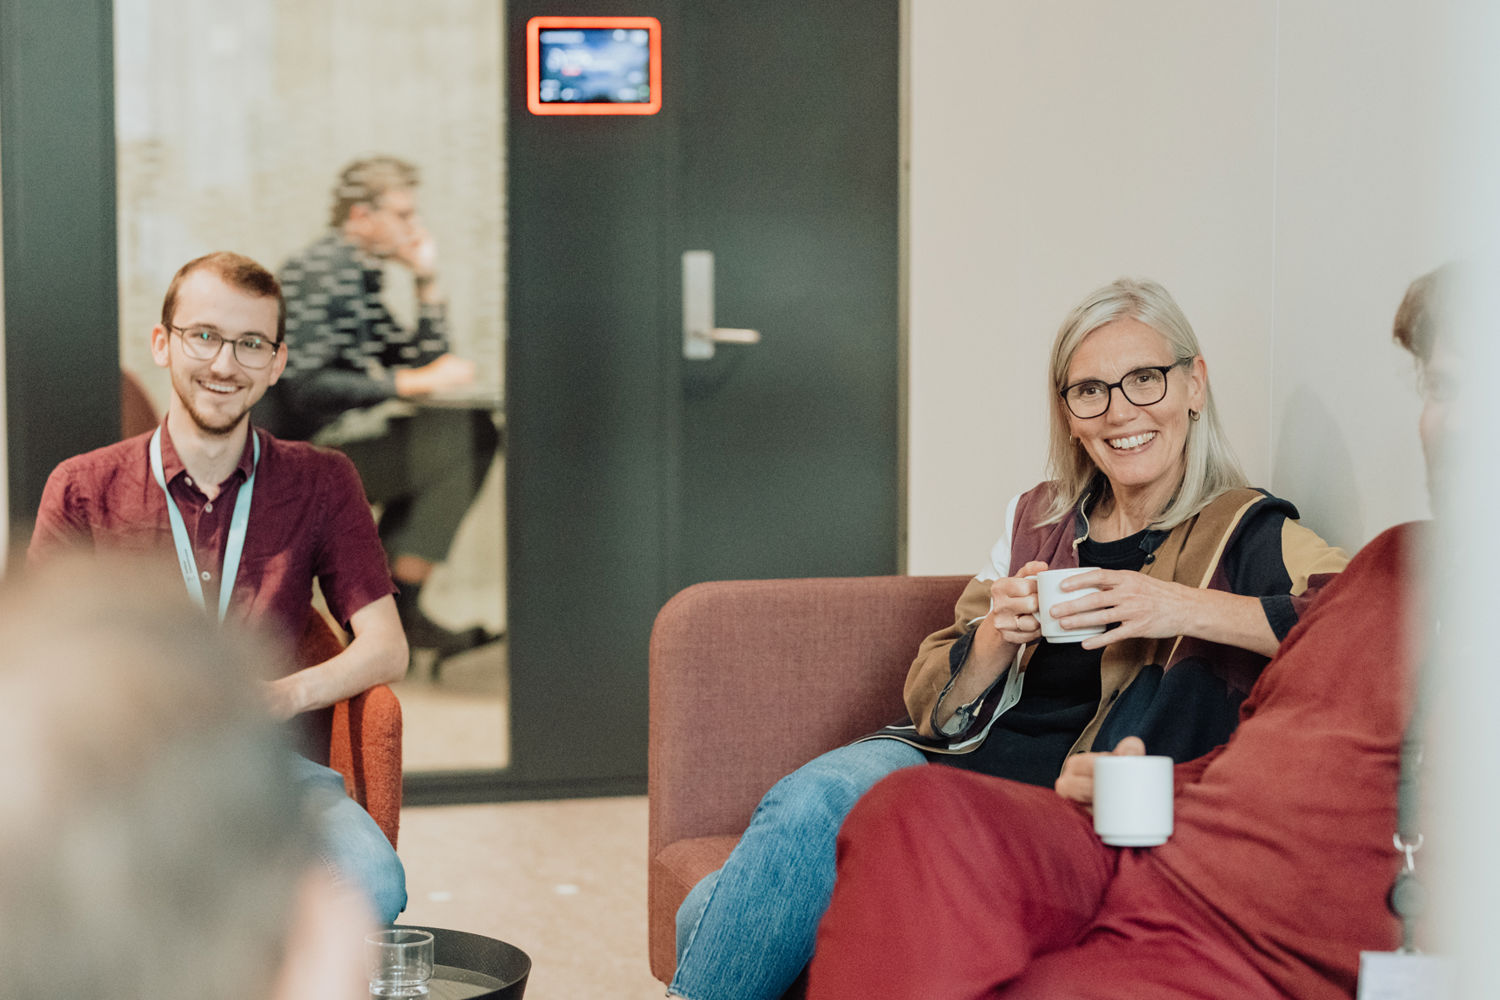 Bilde av Skyss-ansatte sittende i sofa med kaffekopp i handen.
Foto: Karoline Rafe